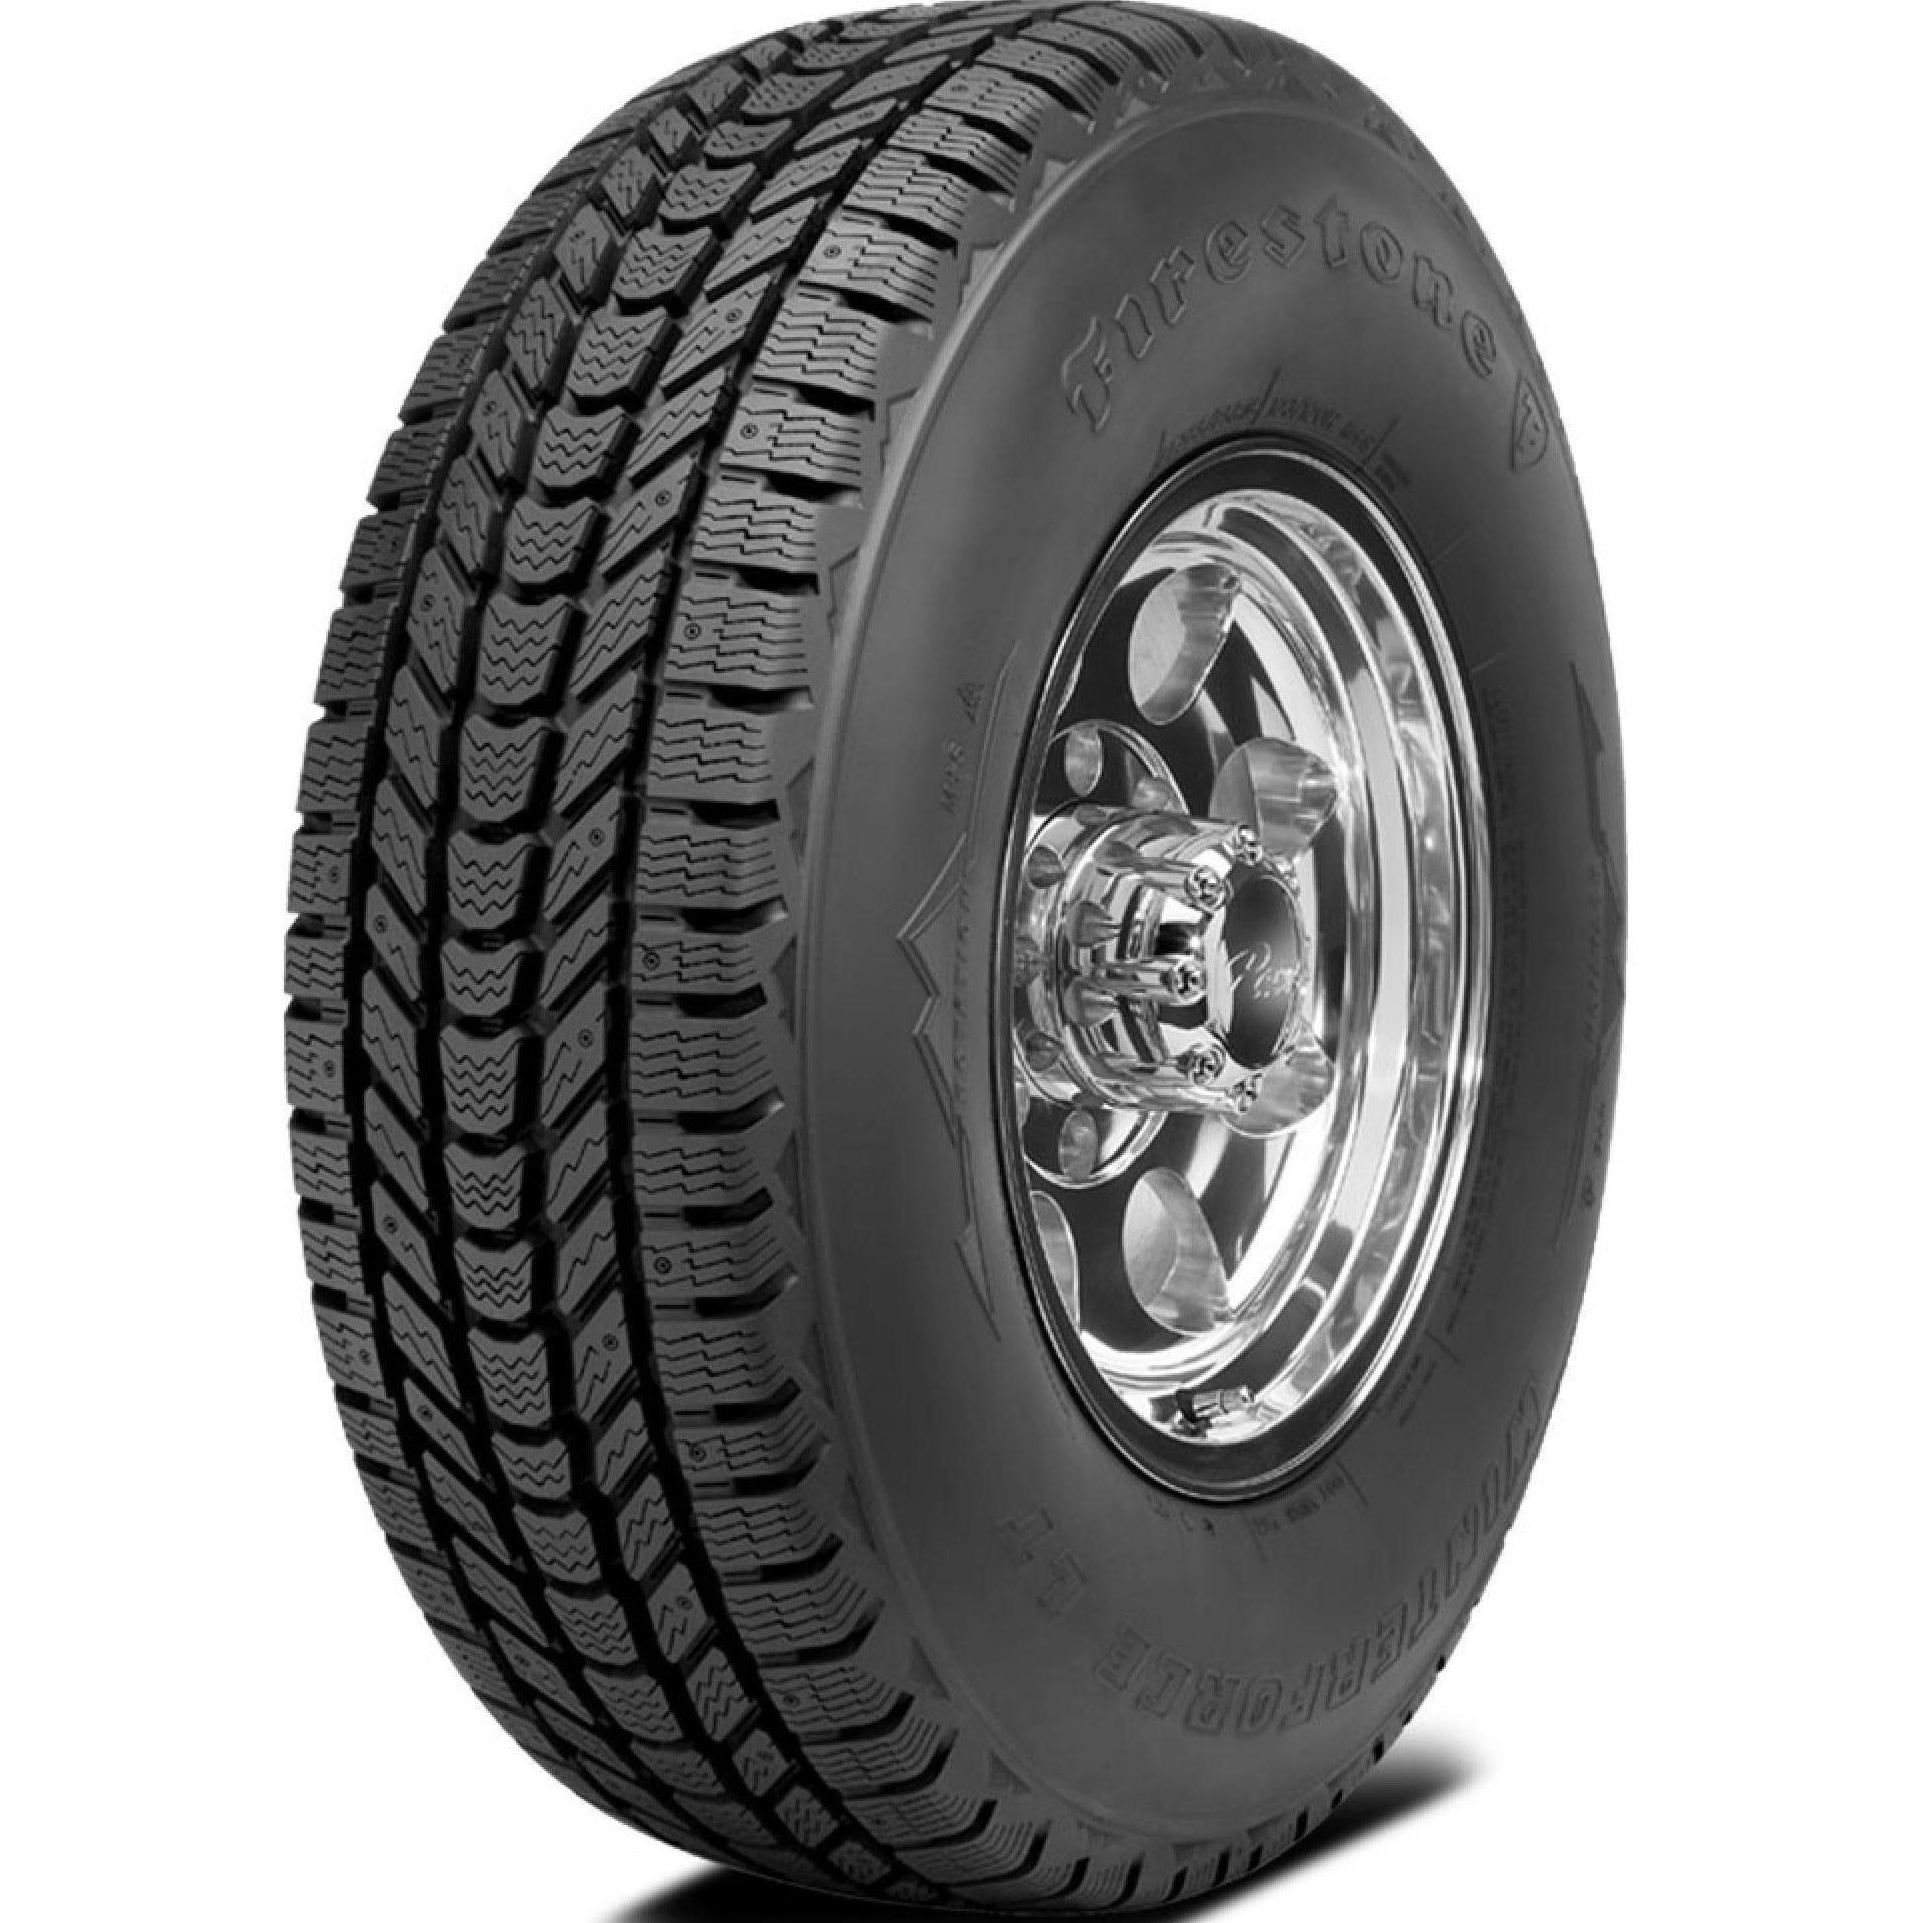 FIRESTONE WINTERFORCE LT LT275/70R18 (33.2X10.8R 18) Tires